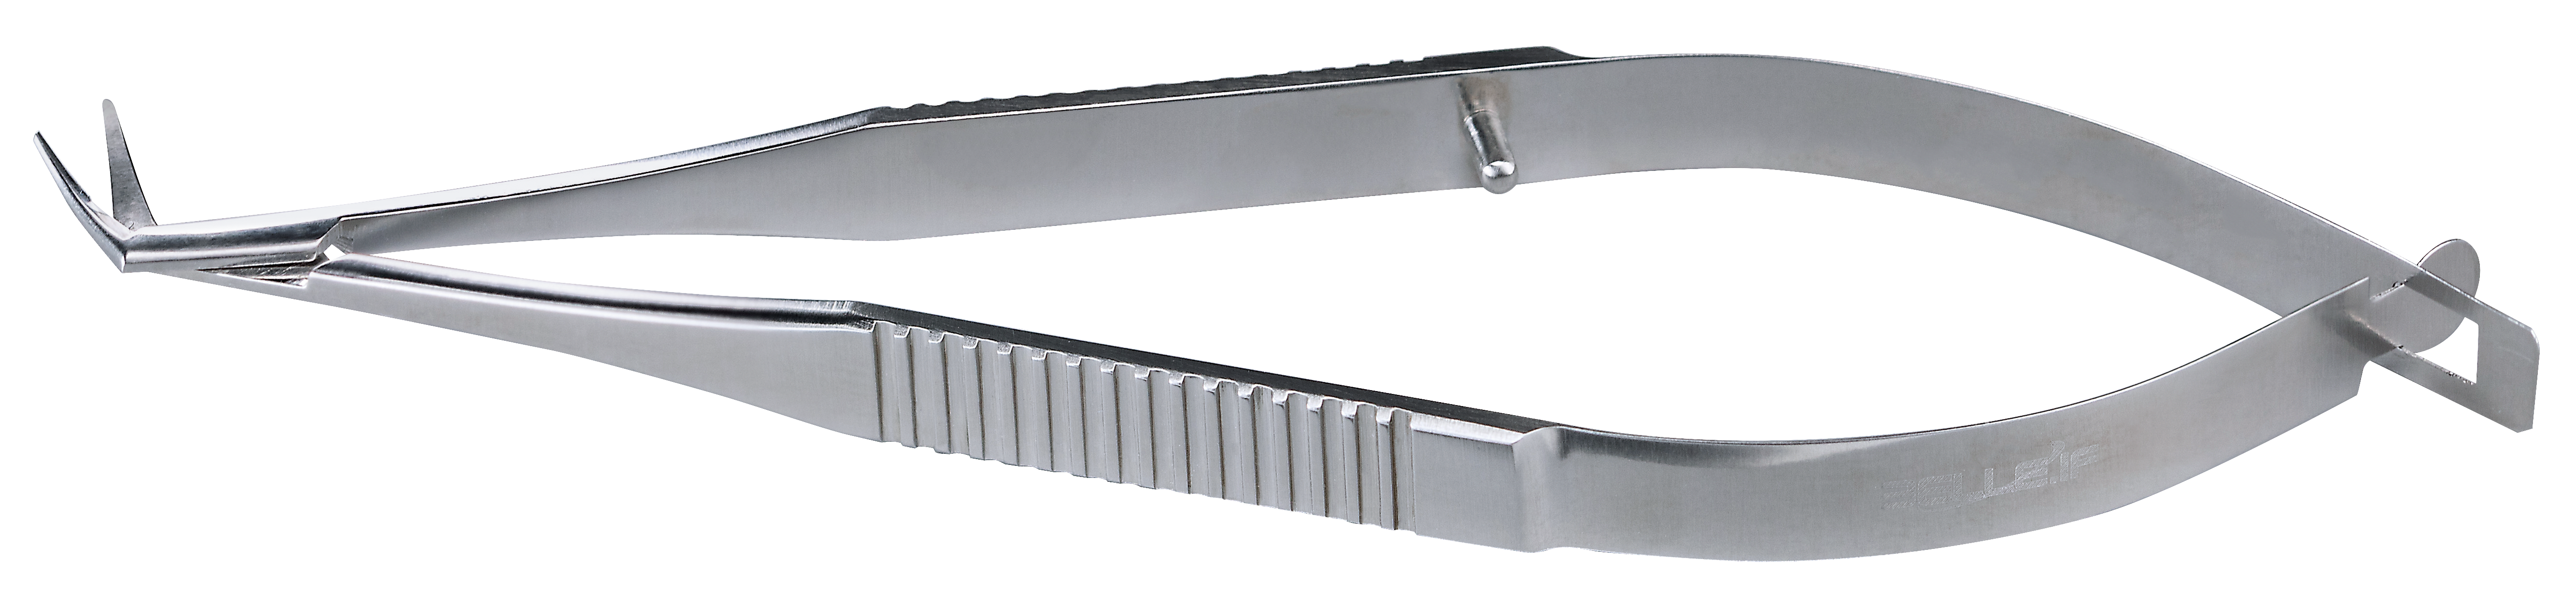 IF-5009D Ножницы для сечения роговицы из нержавеющей стали